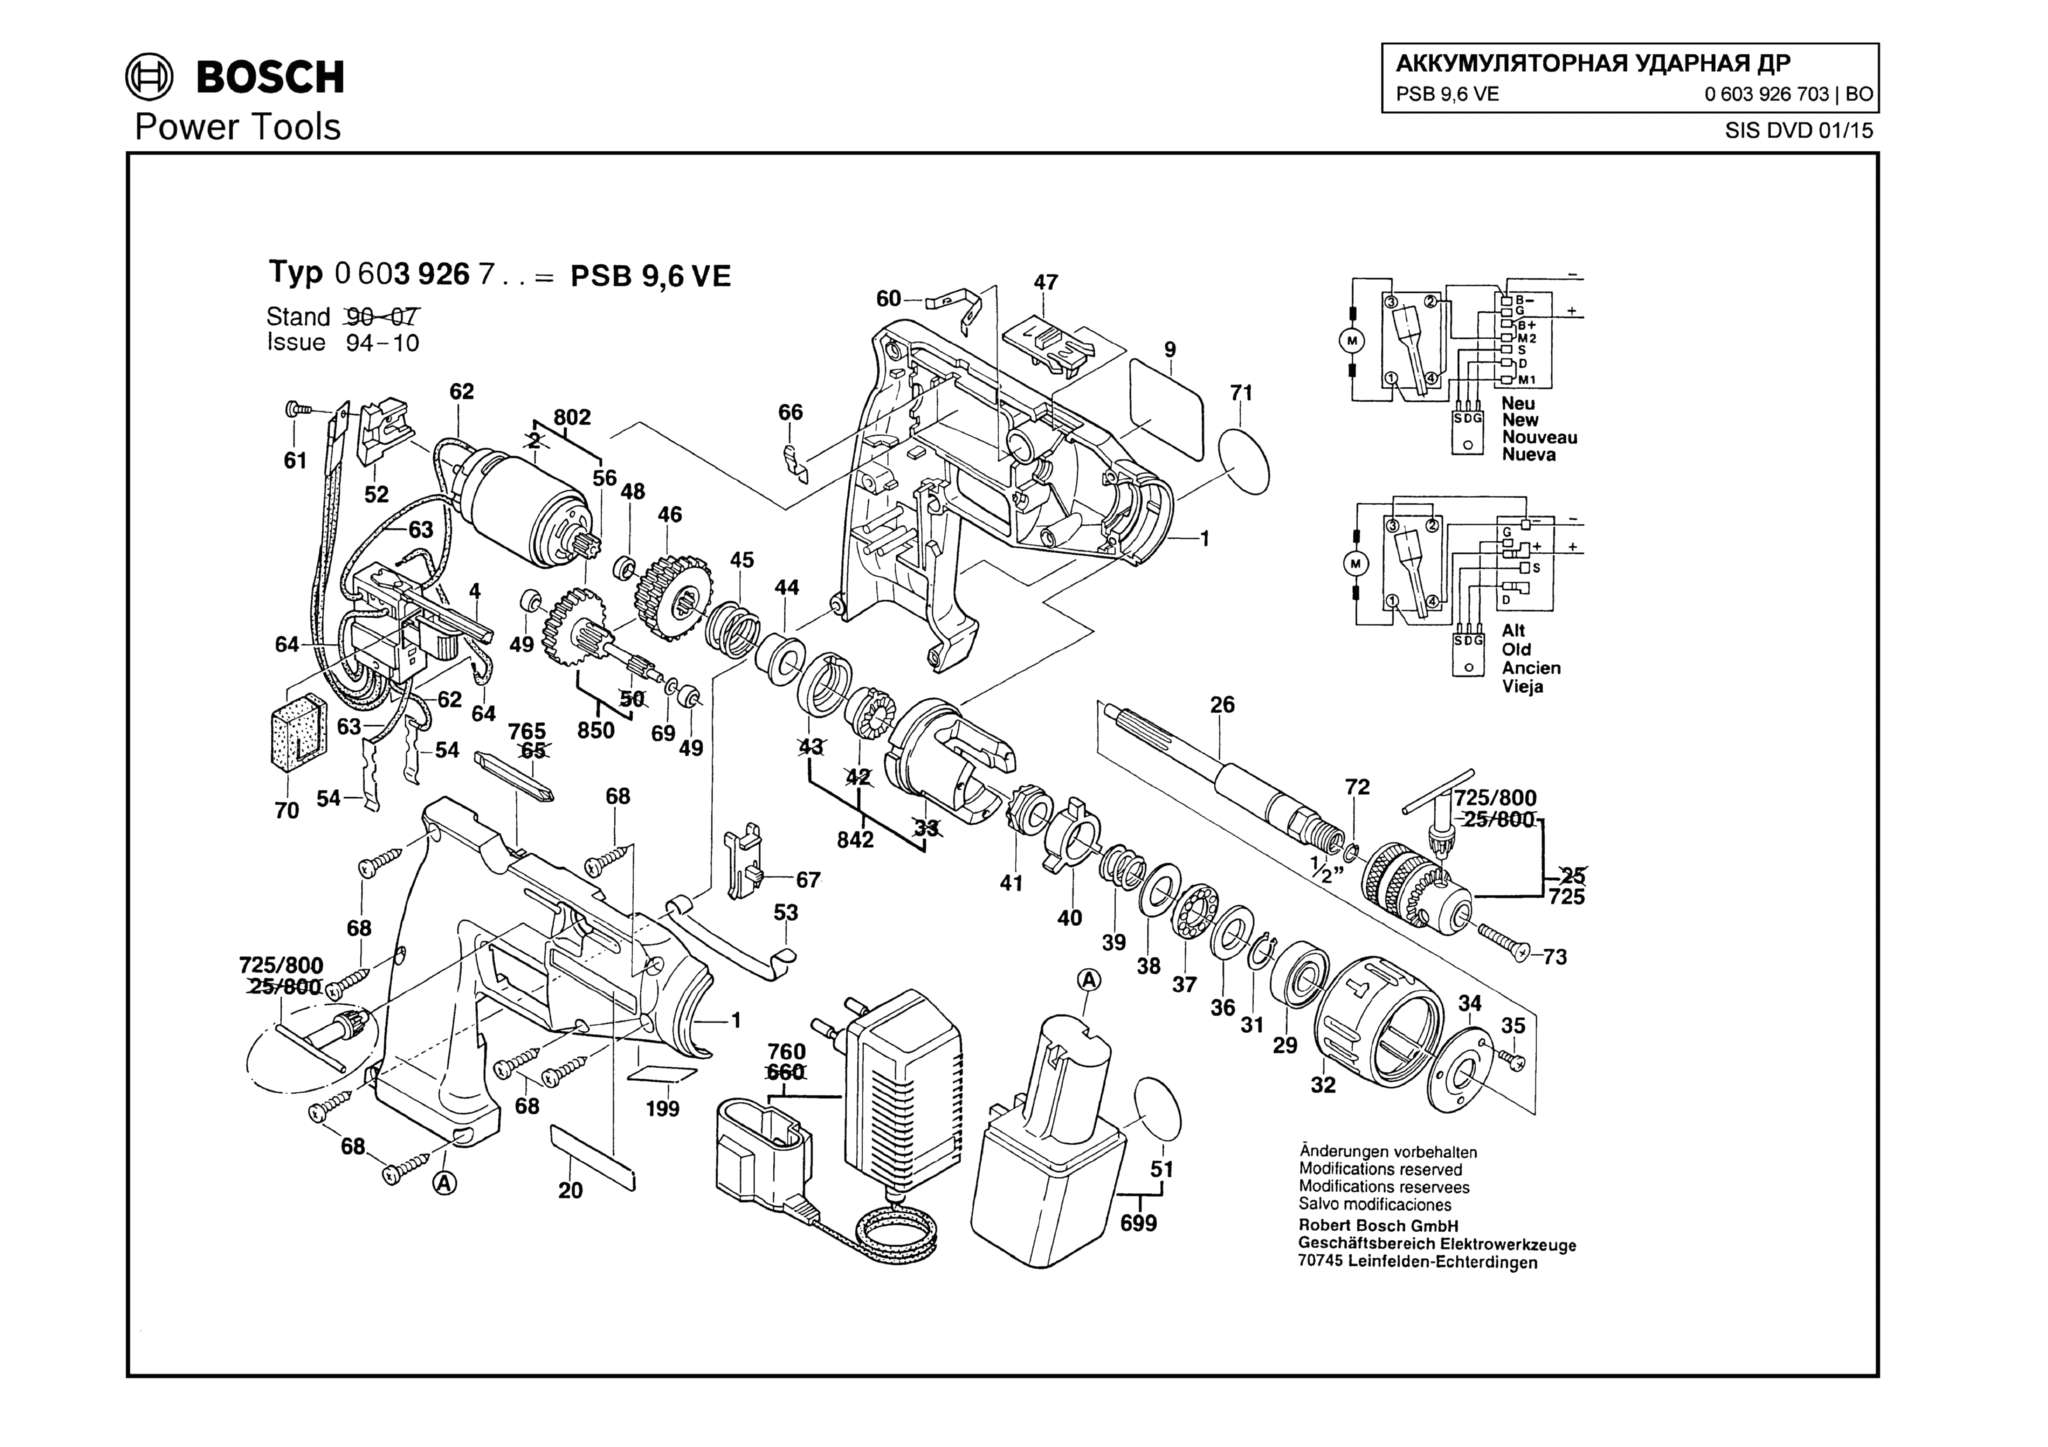 Запчасти, схема и деталировка Bosch PSB 9,6 VE (ТИП 0603926703)